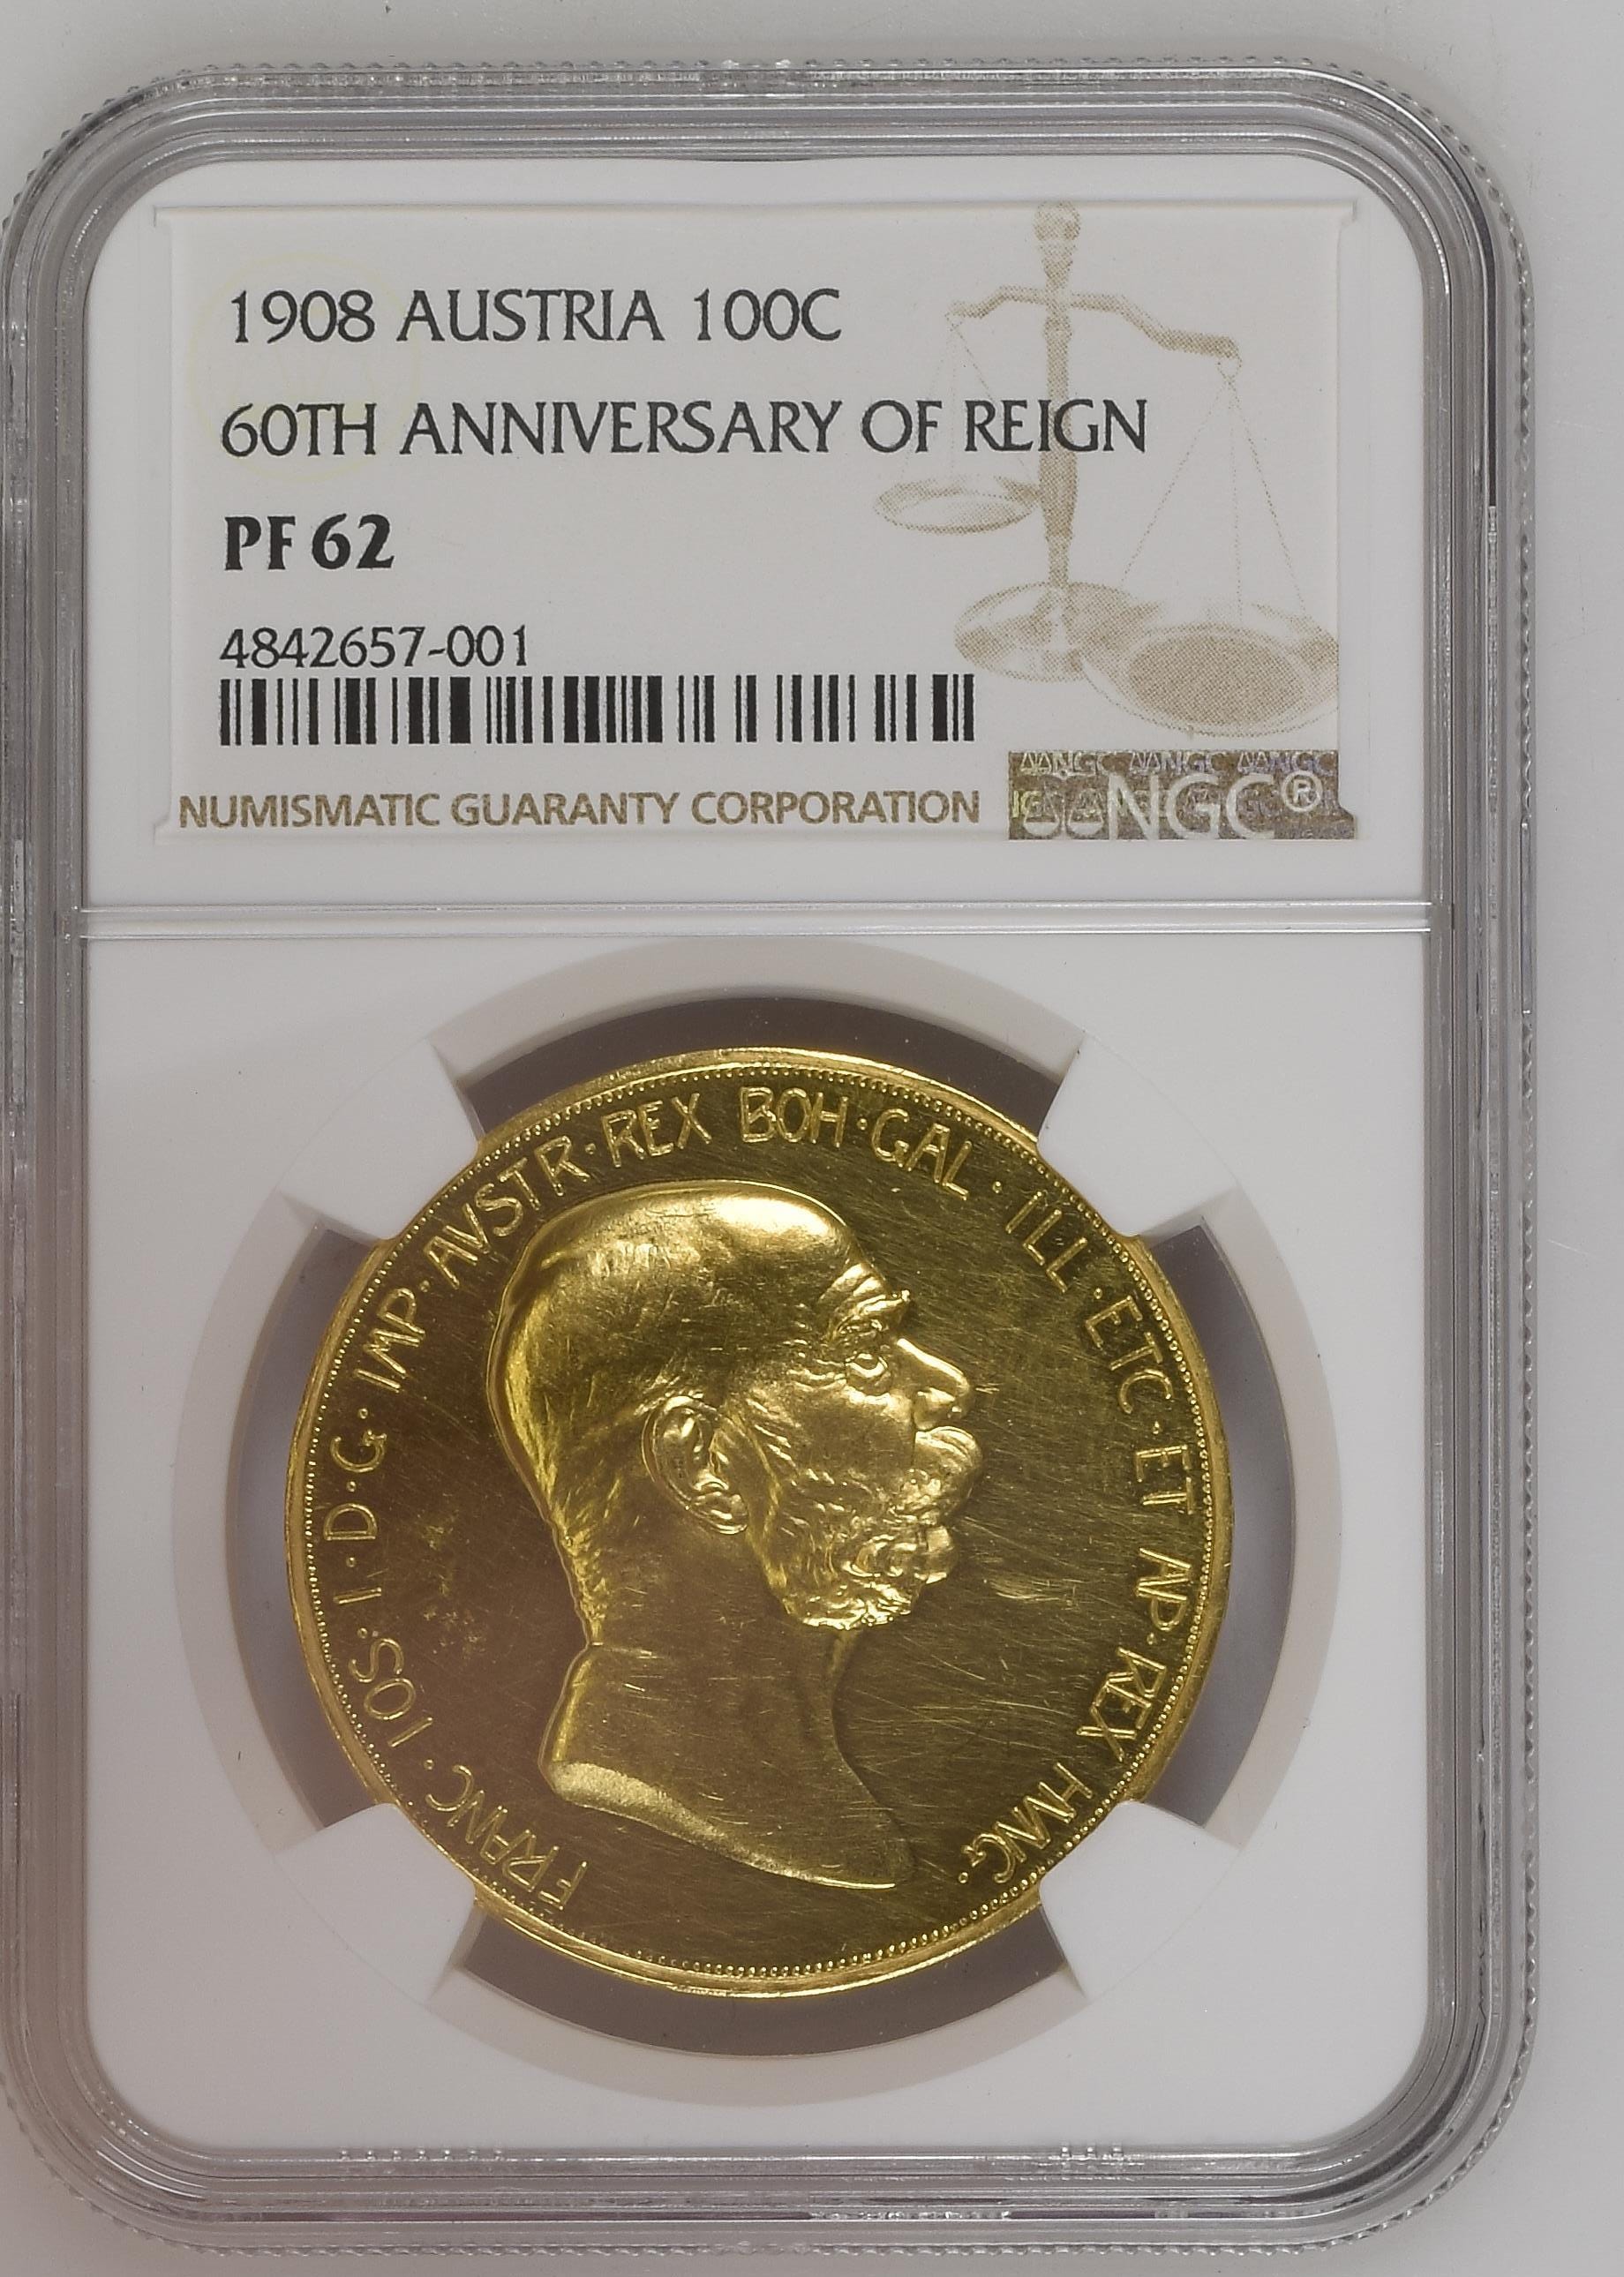 オーストリア フランツ・ヨーゼフ1世(1848-1916) 20コロナ金貨 | www ...